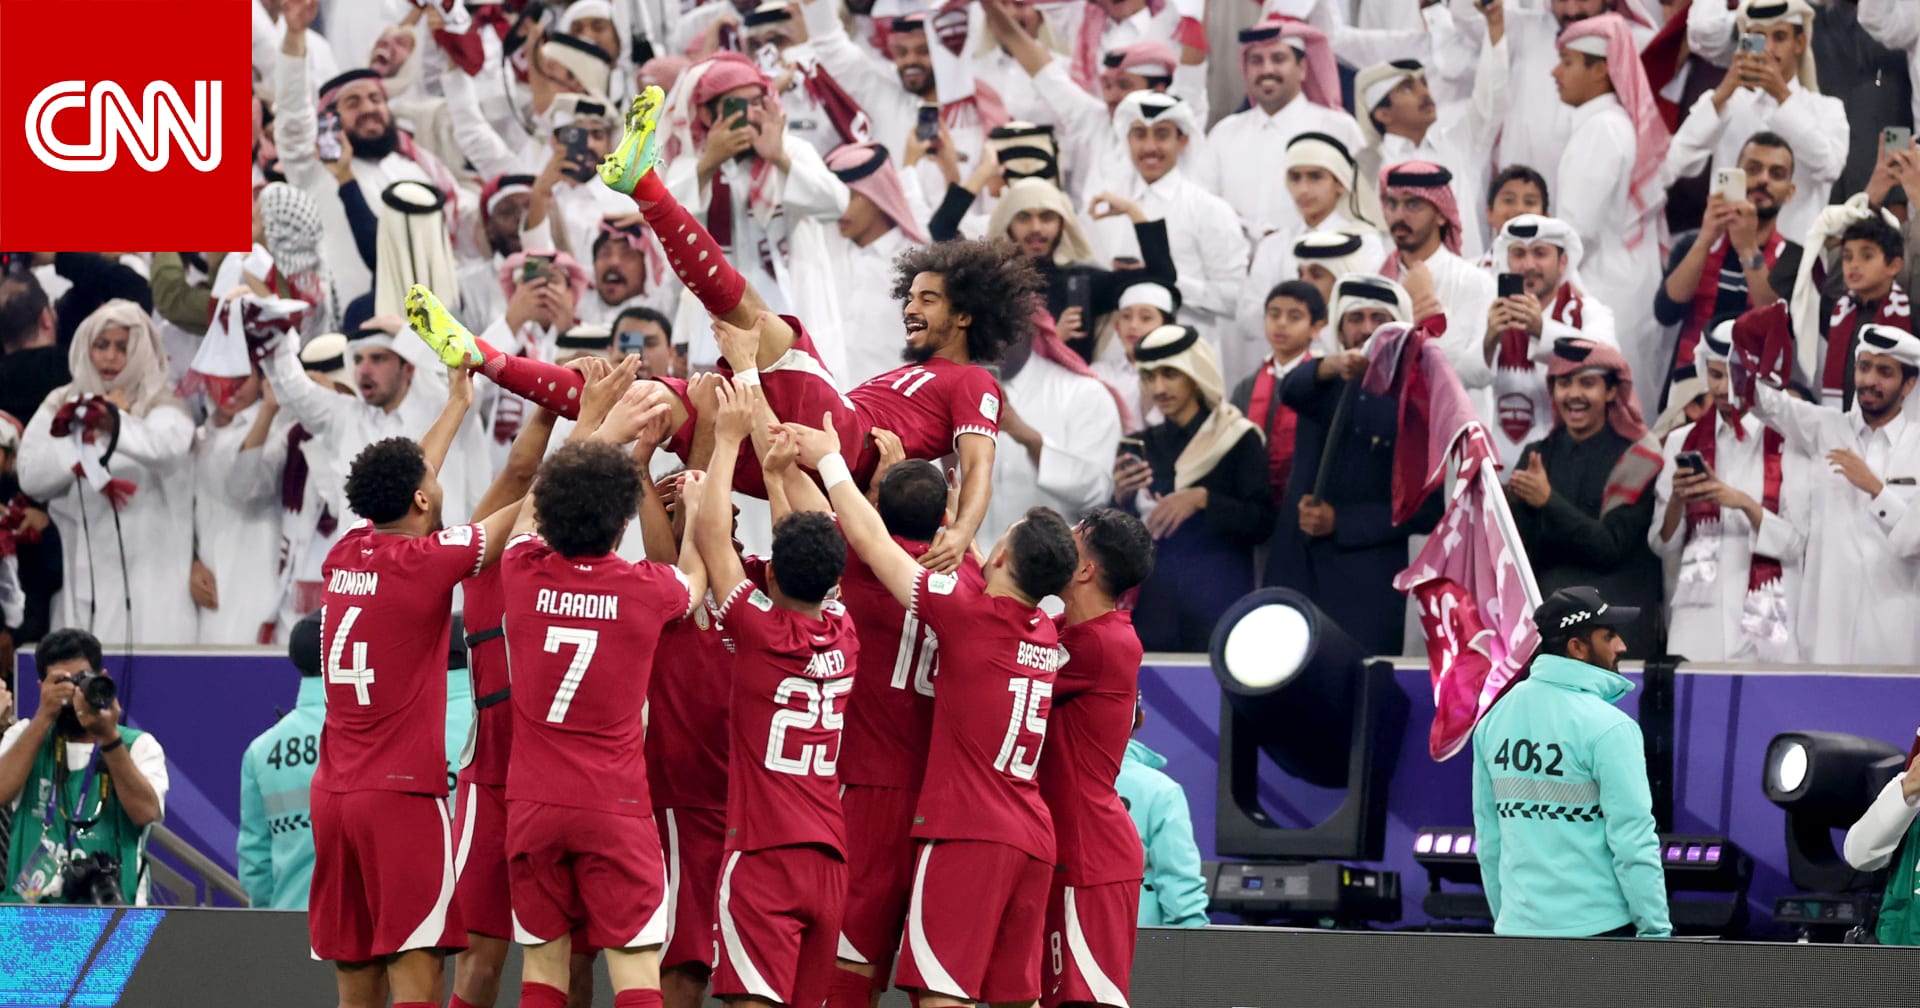 قطر تفوز على الأردن وتحرز لقب كأس آسيا للمرة الثانية في تاريخها